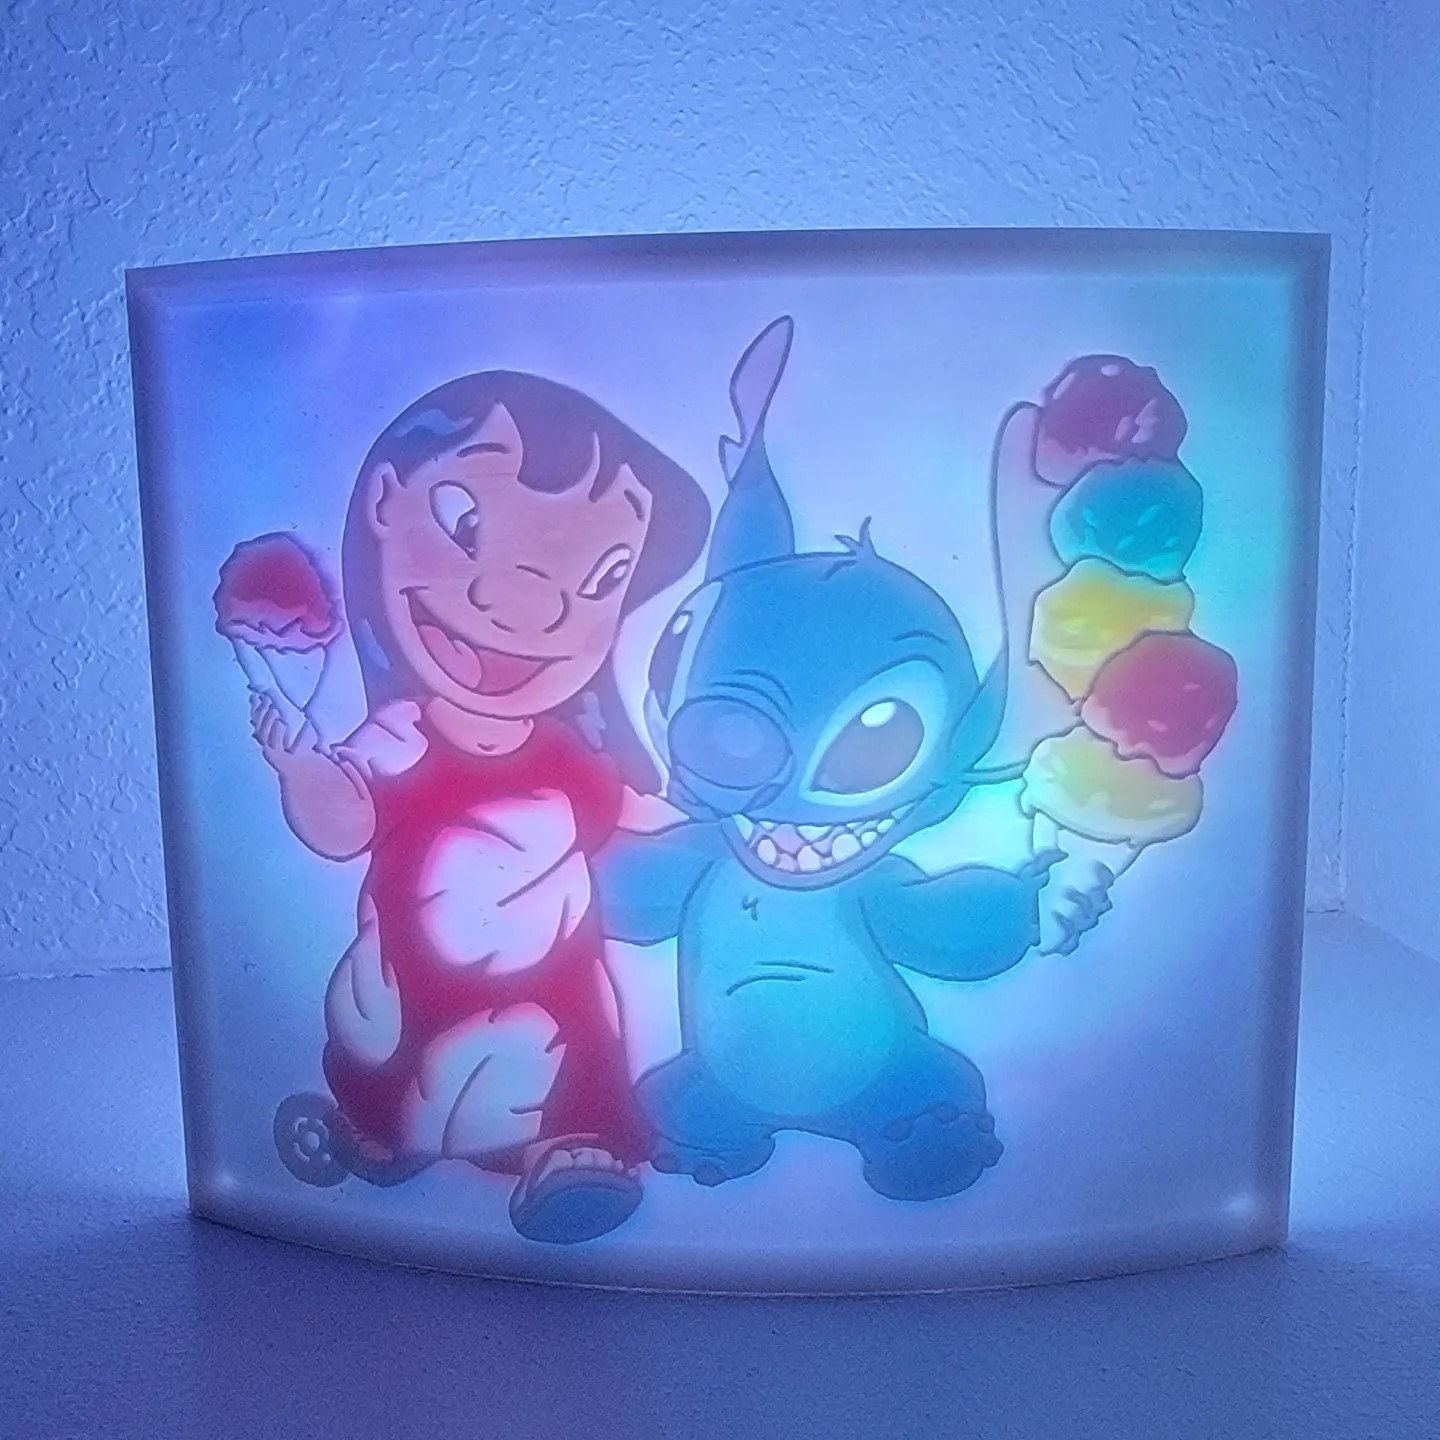 Veilleuse LED Disney Stitch / Lilo et Stitch Disney sans fil Paladone  l.12cm x H.15,9cm x P.13,5cm